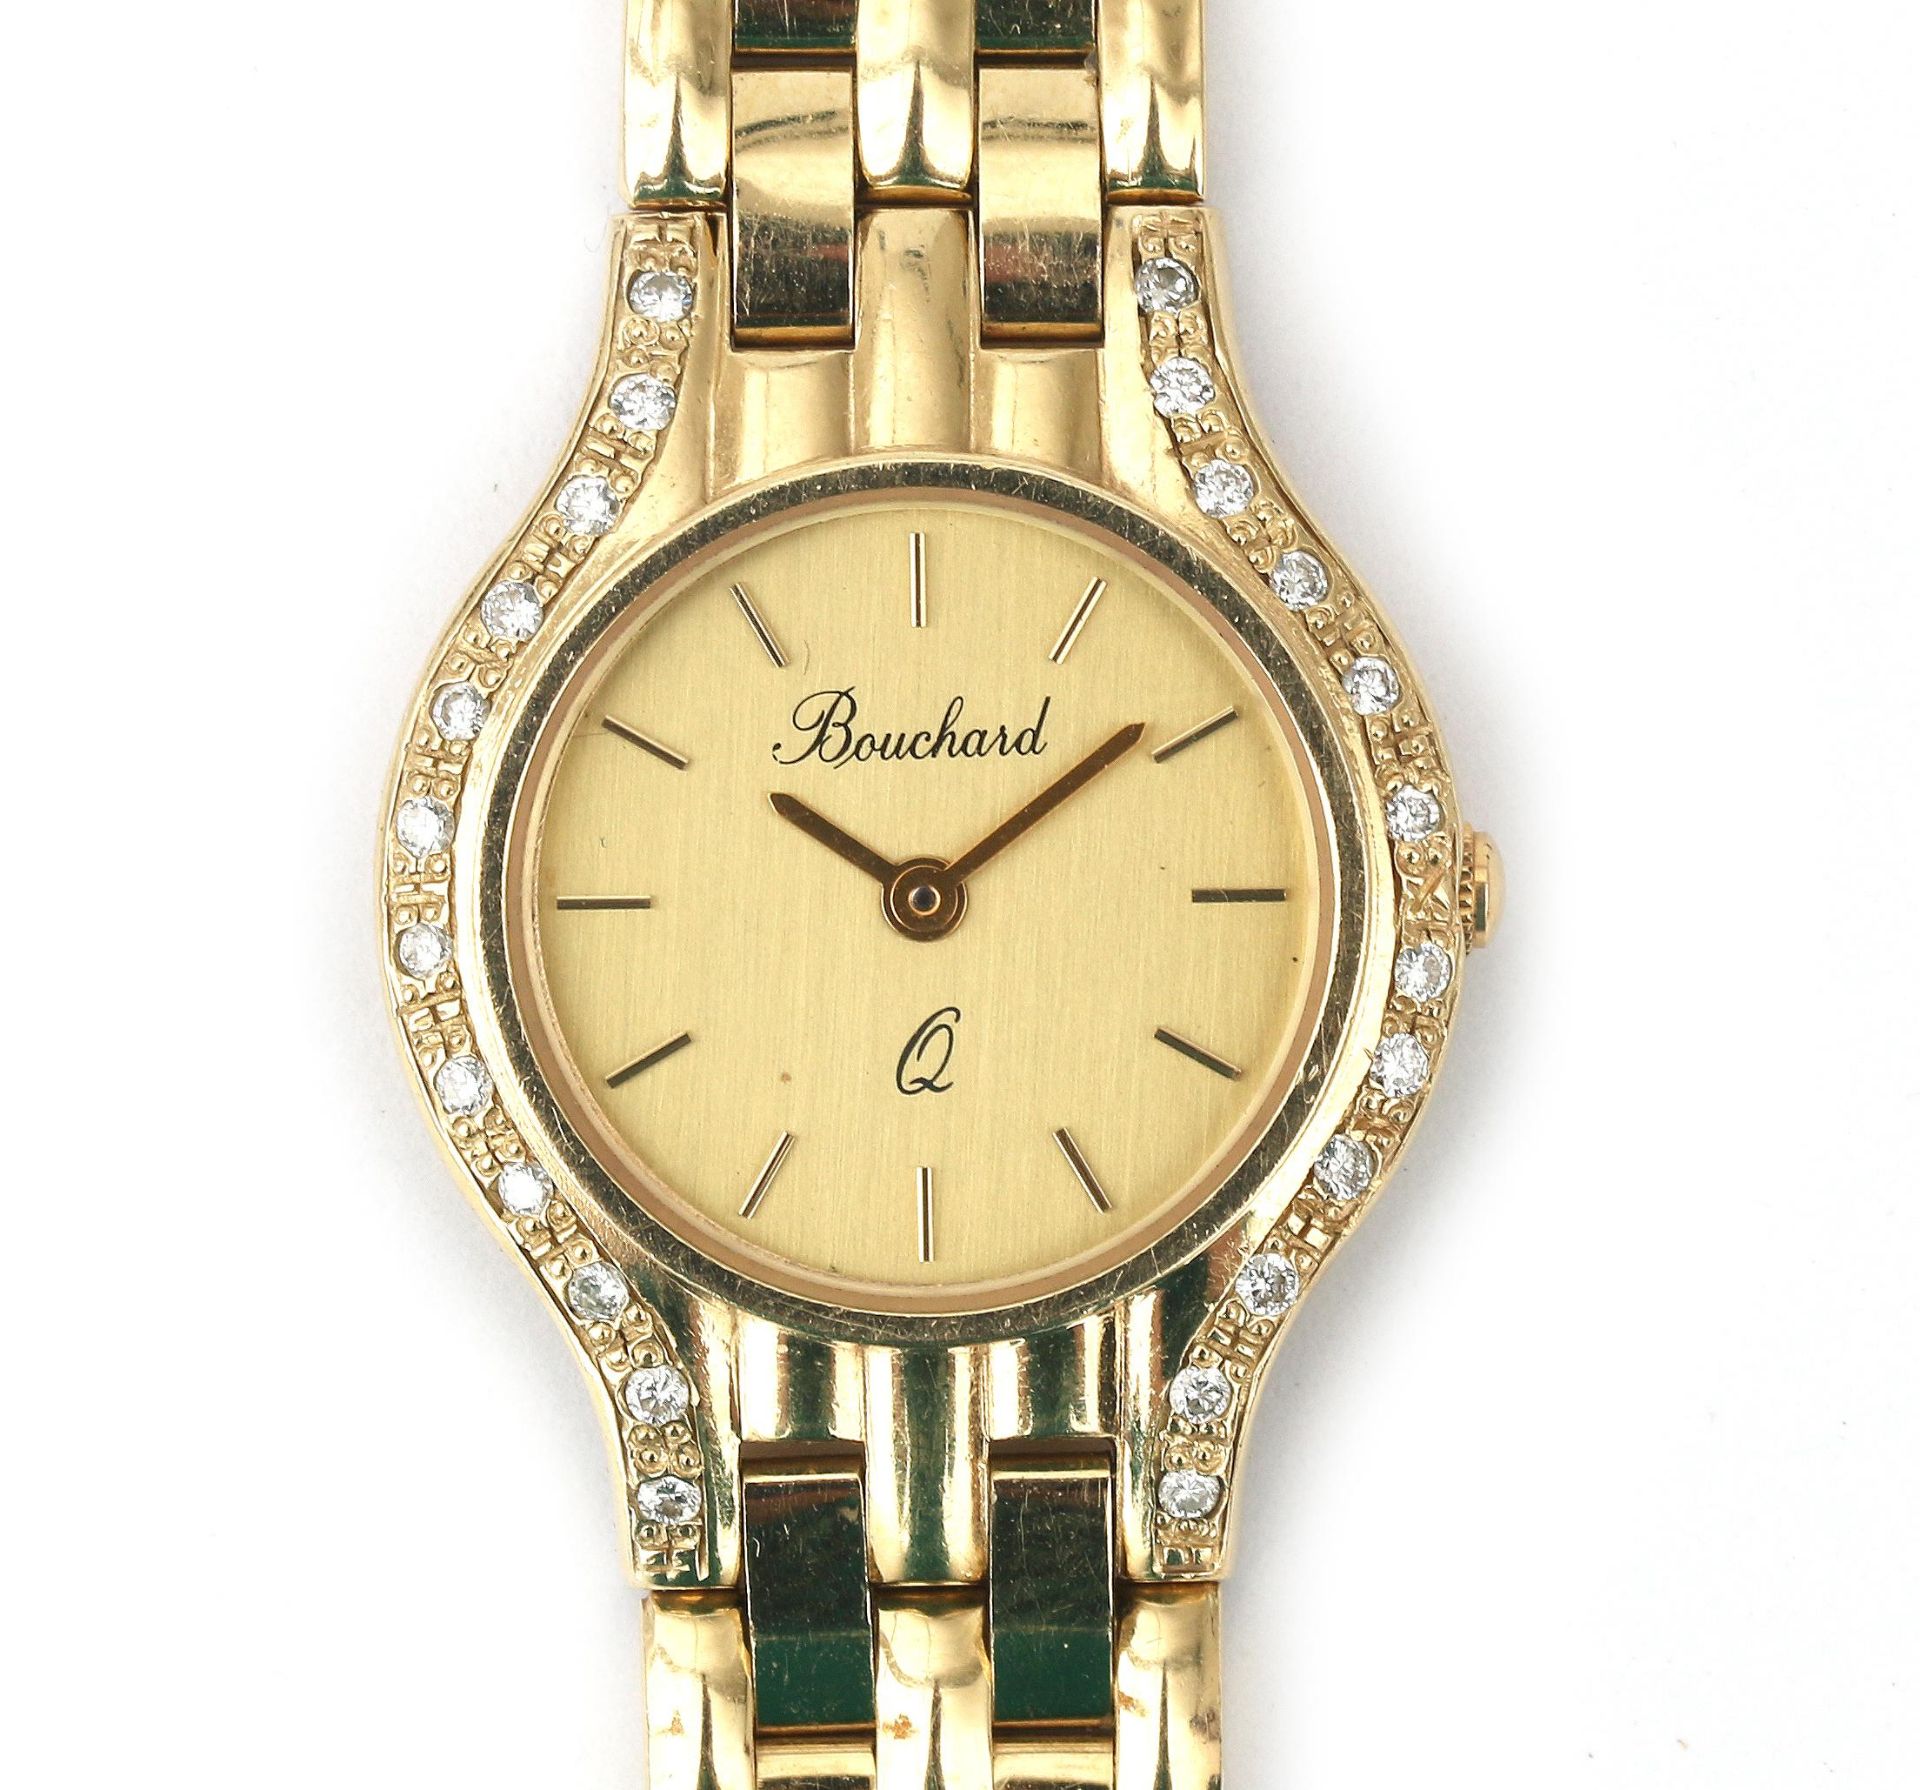 A 14 karat gold and diamond Bouchard lady's wristwatch